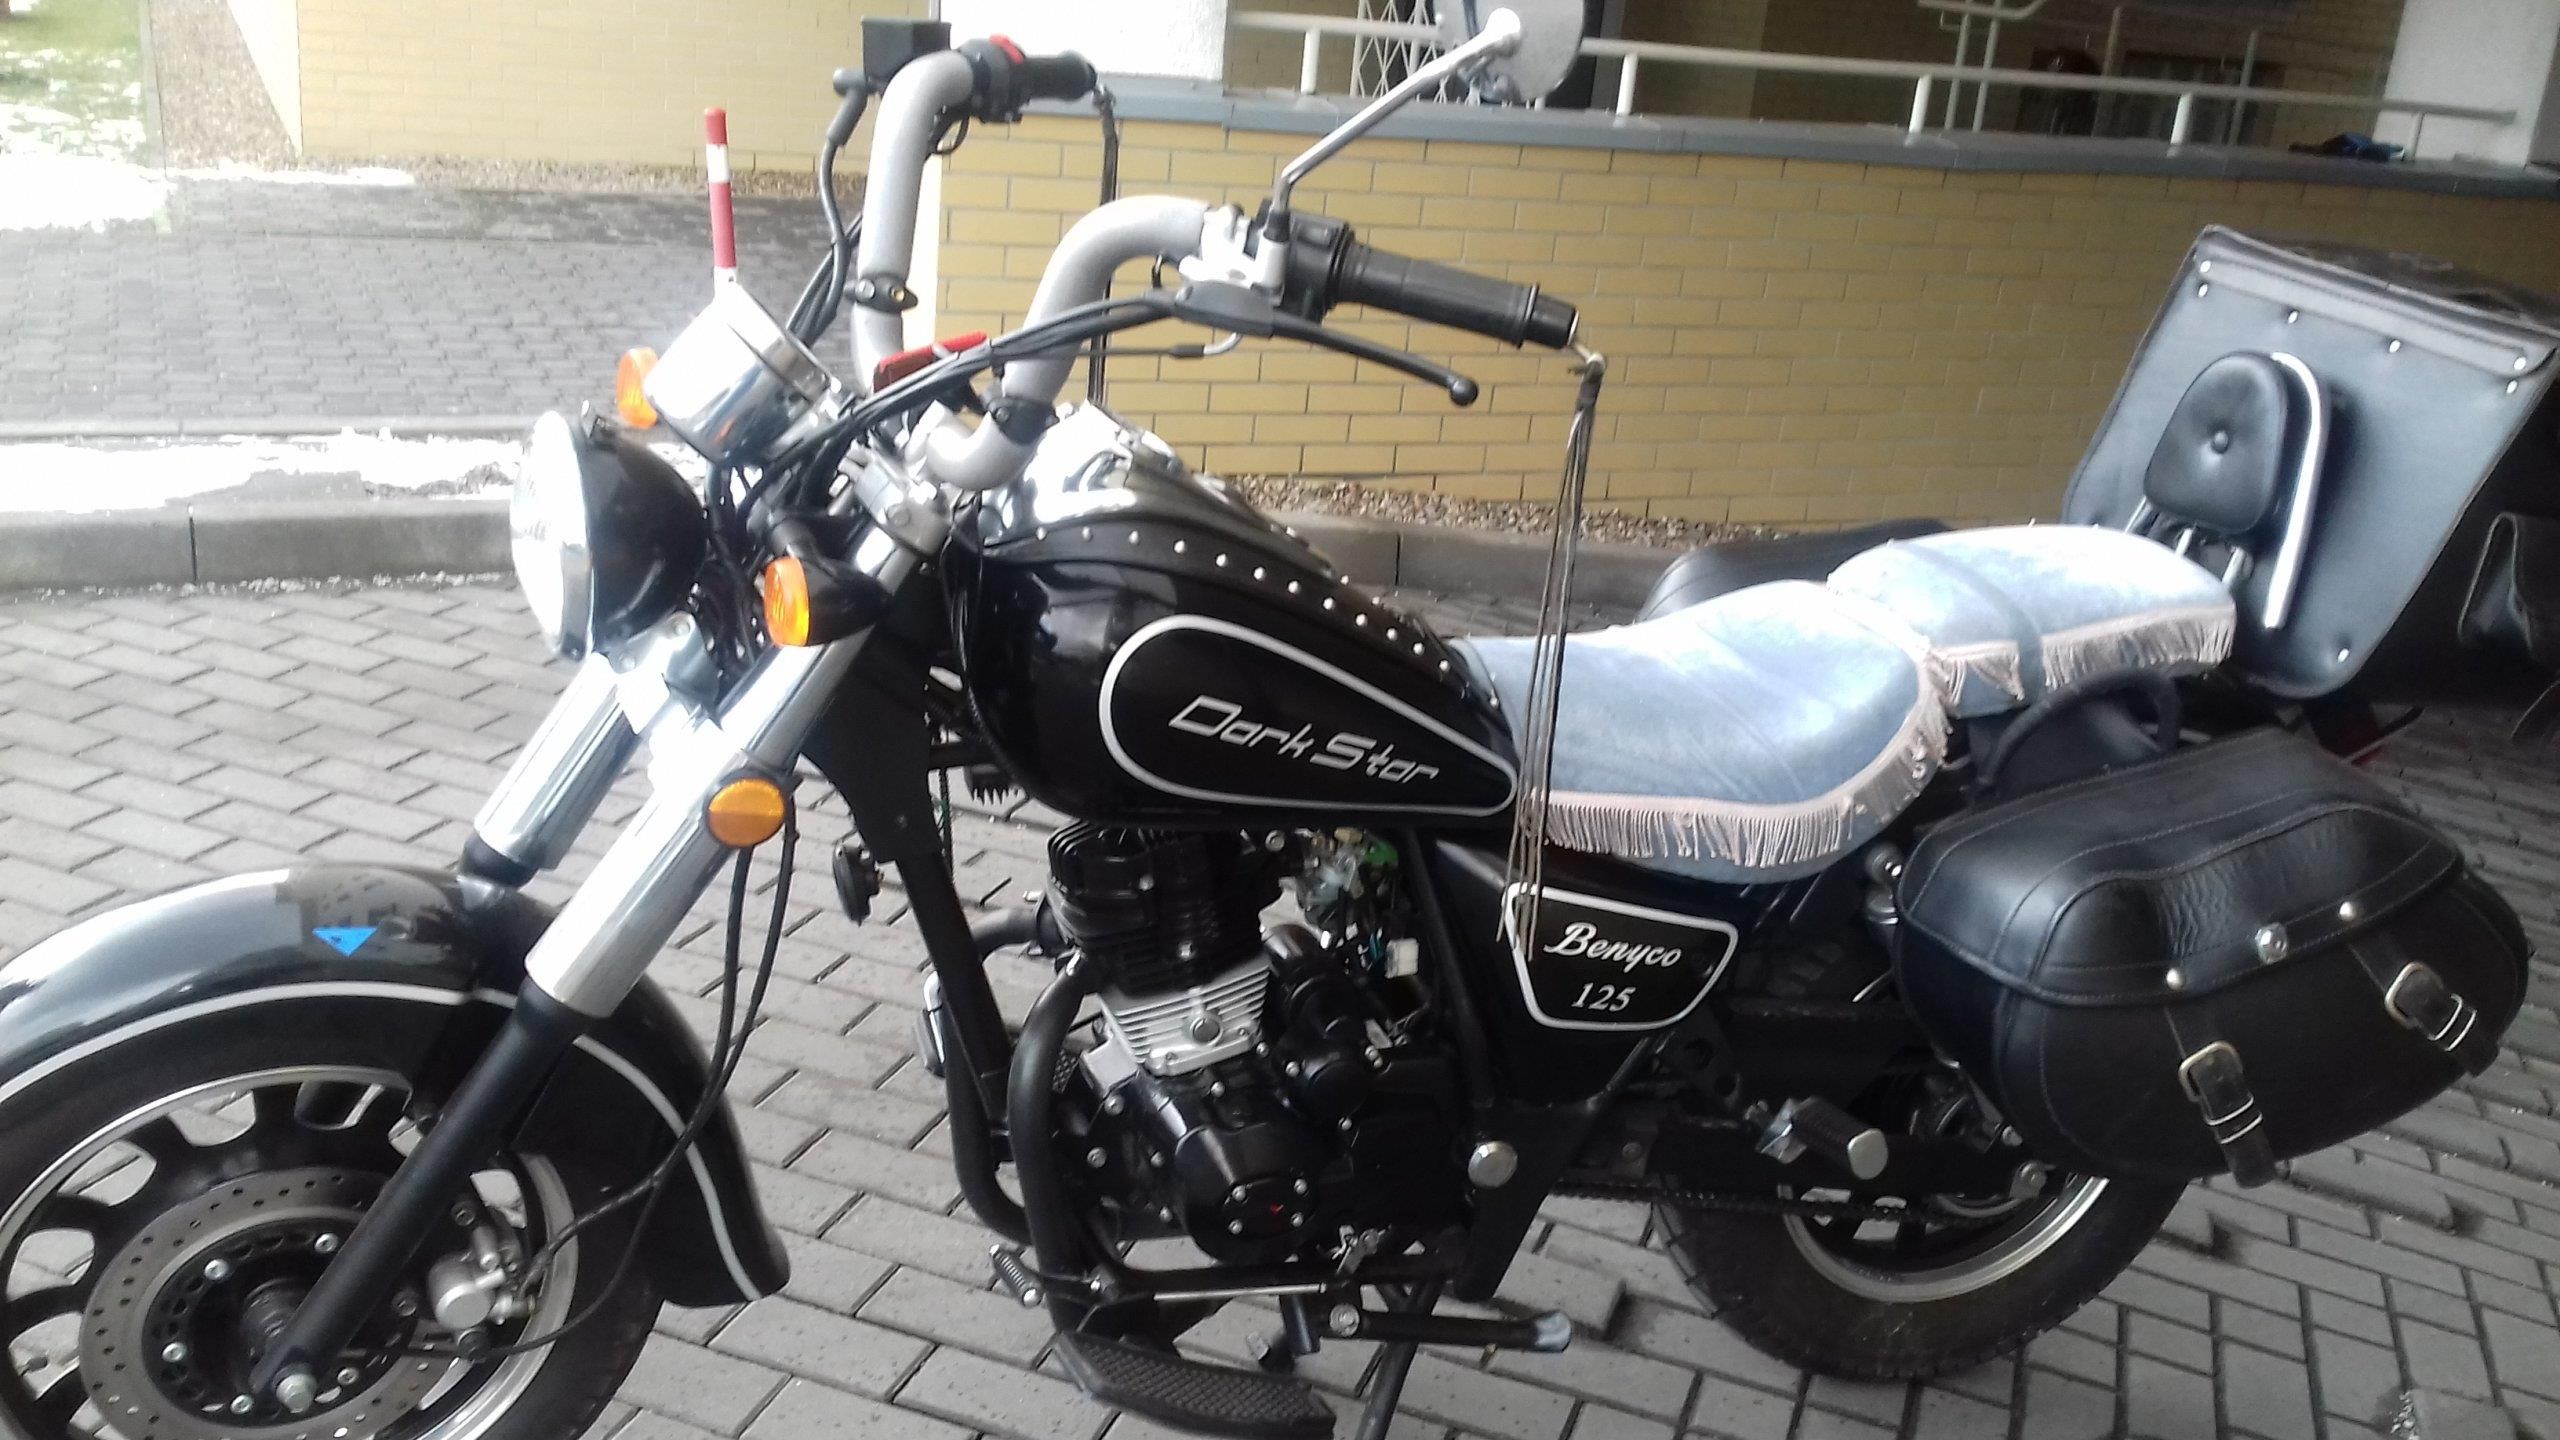 Motocykl Chopper Dark Star 125 Opinie i ceny na Ceneo.pl